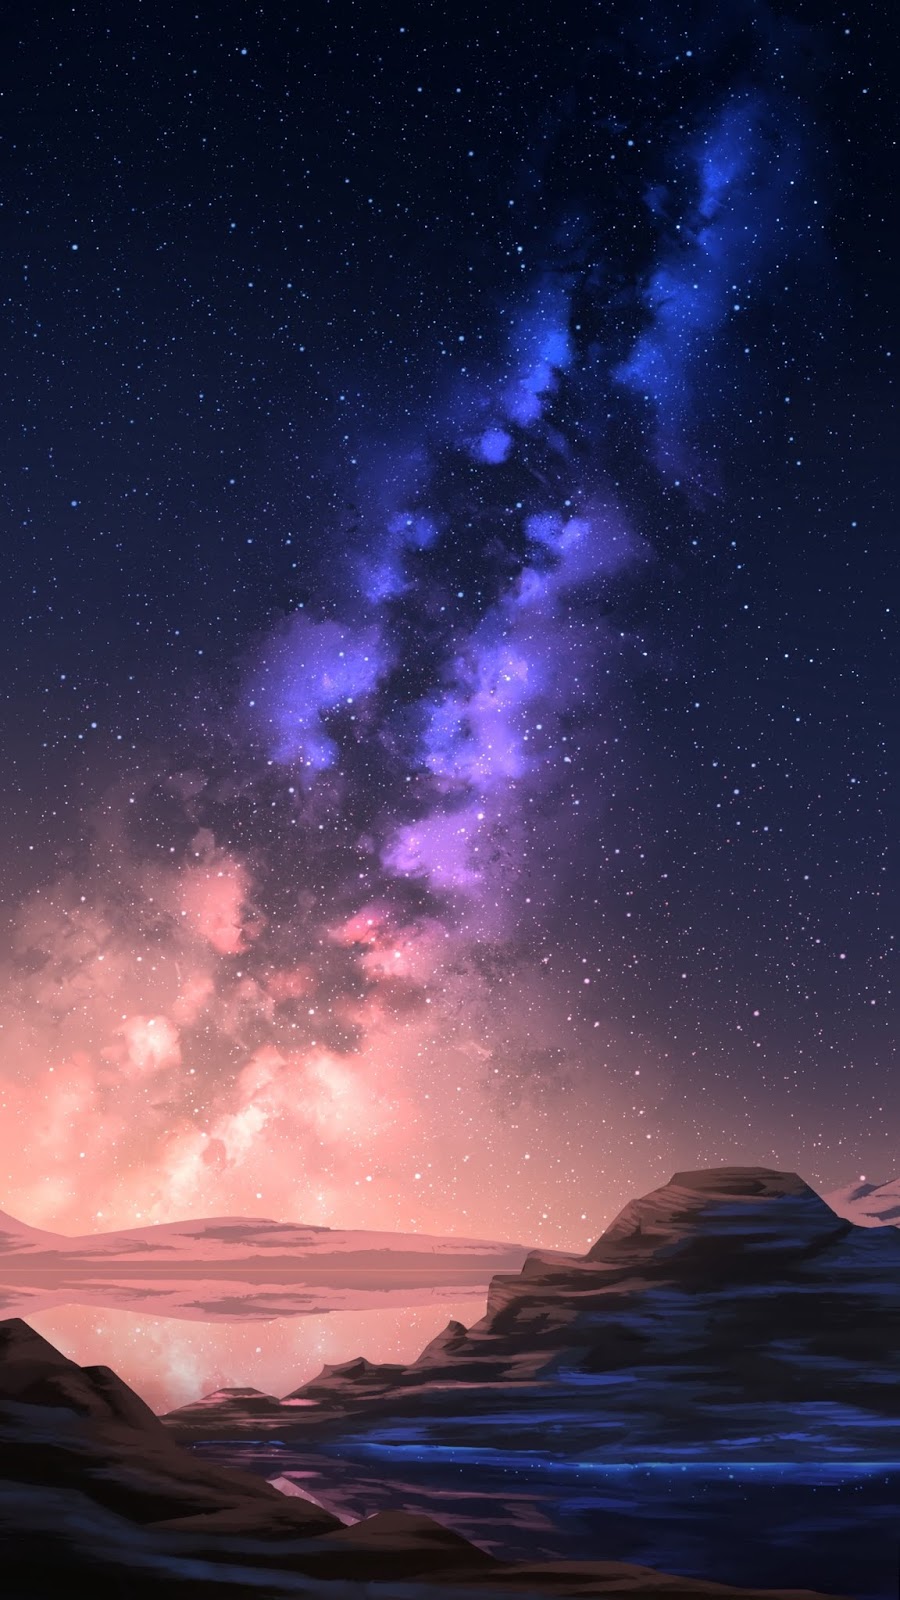 Starry mountain night